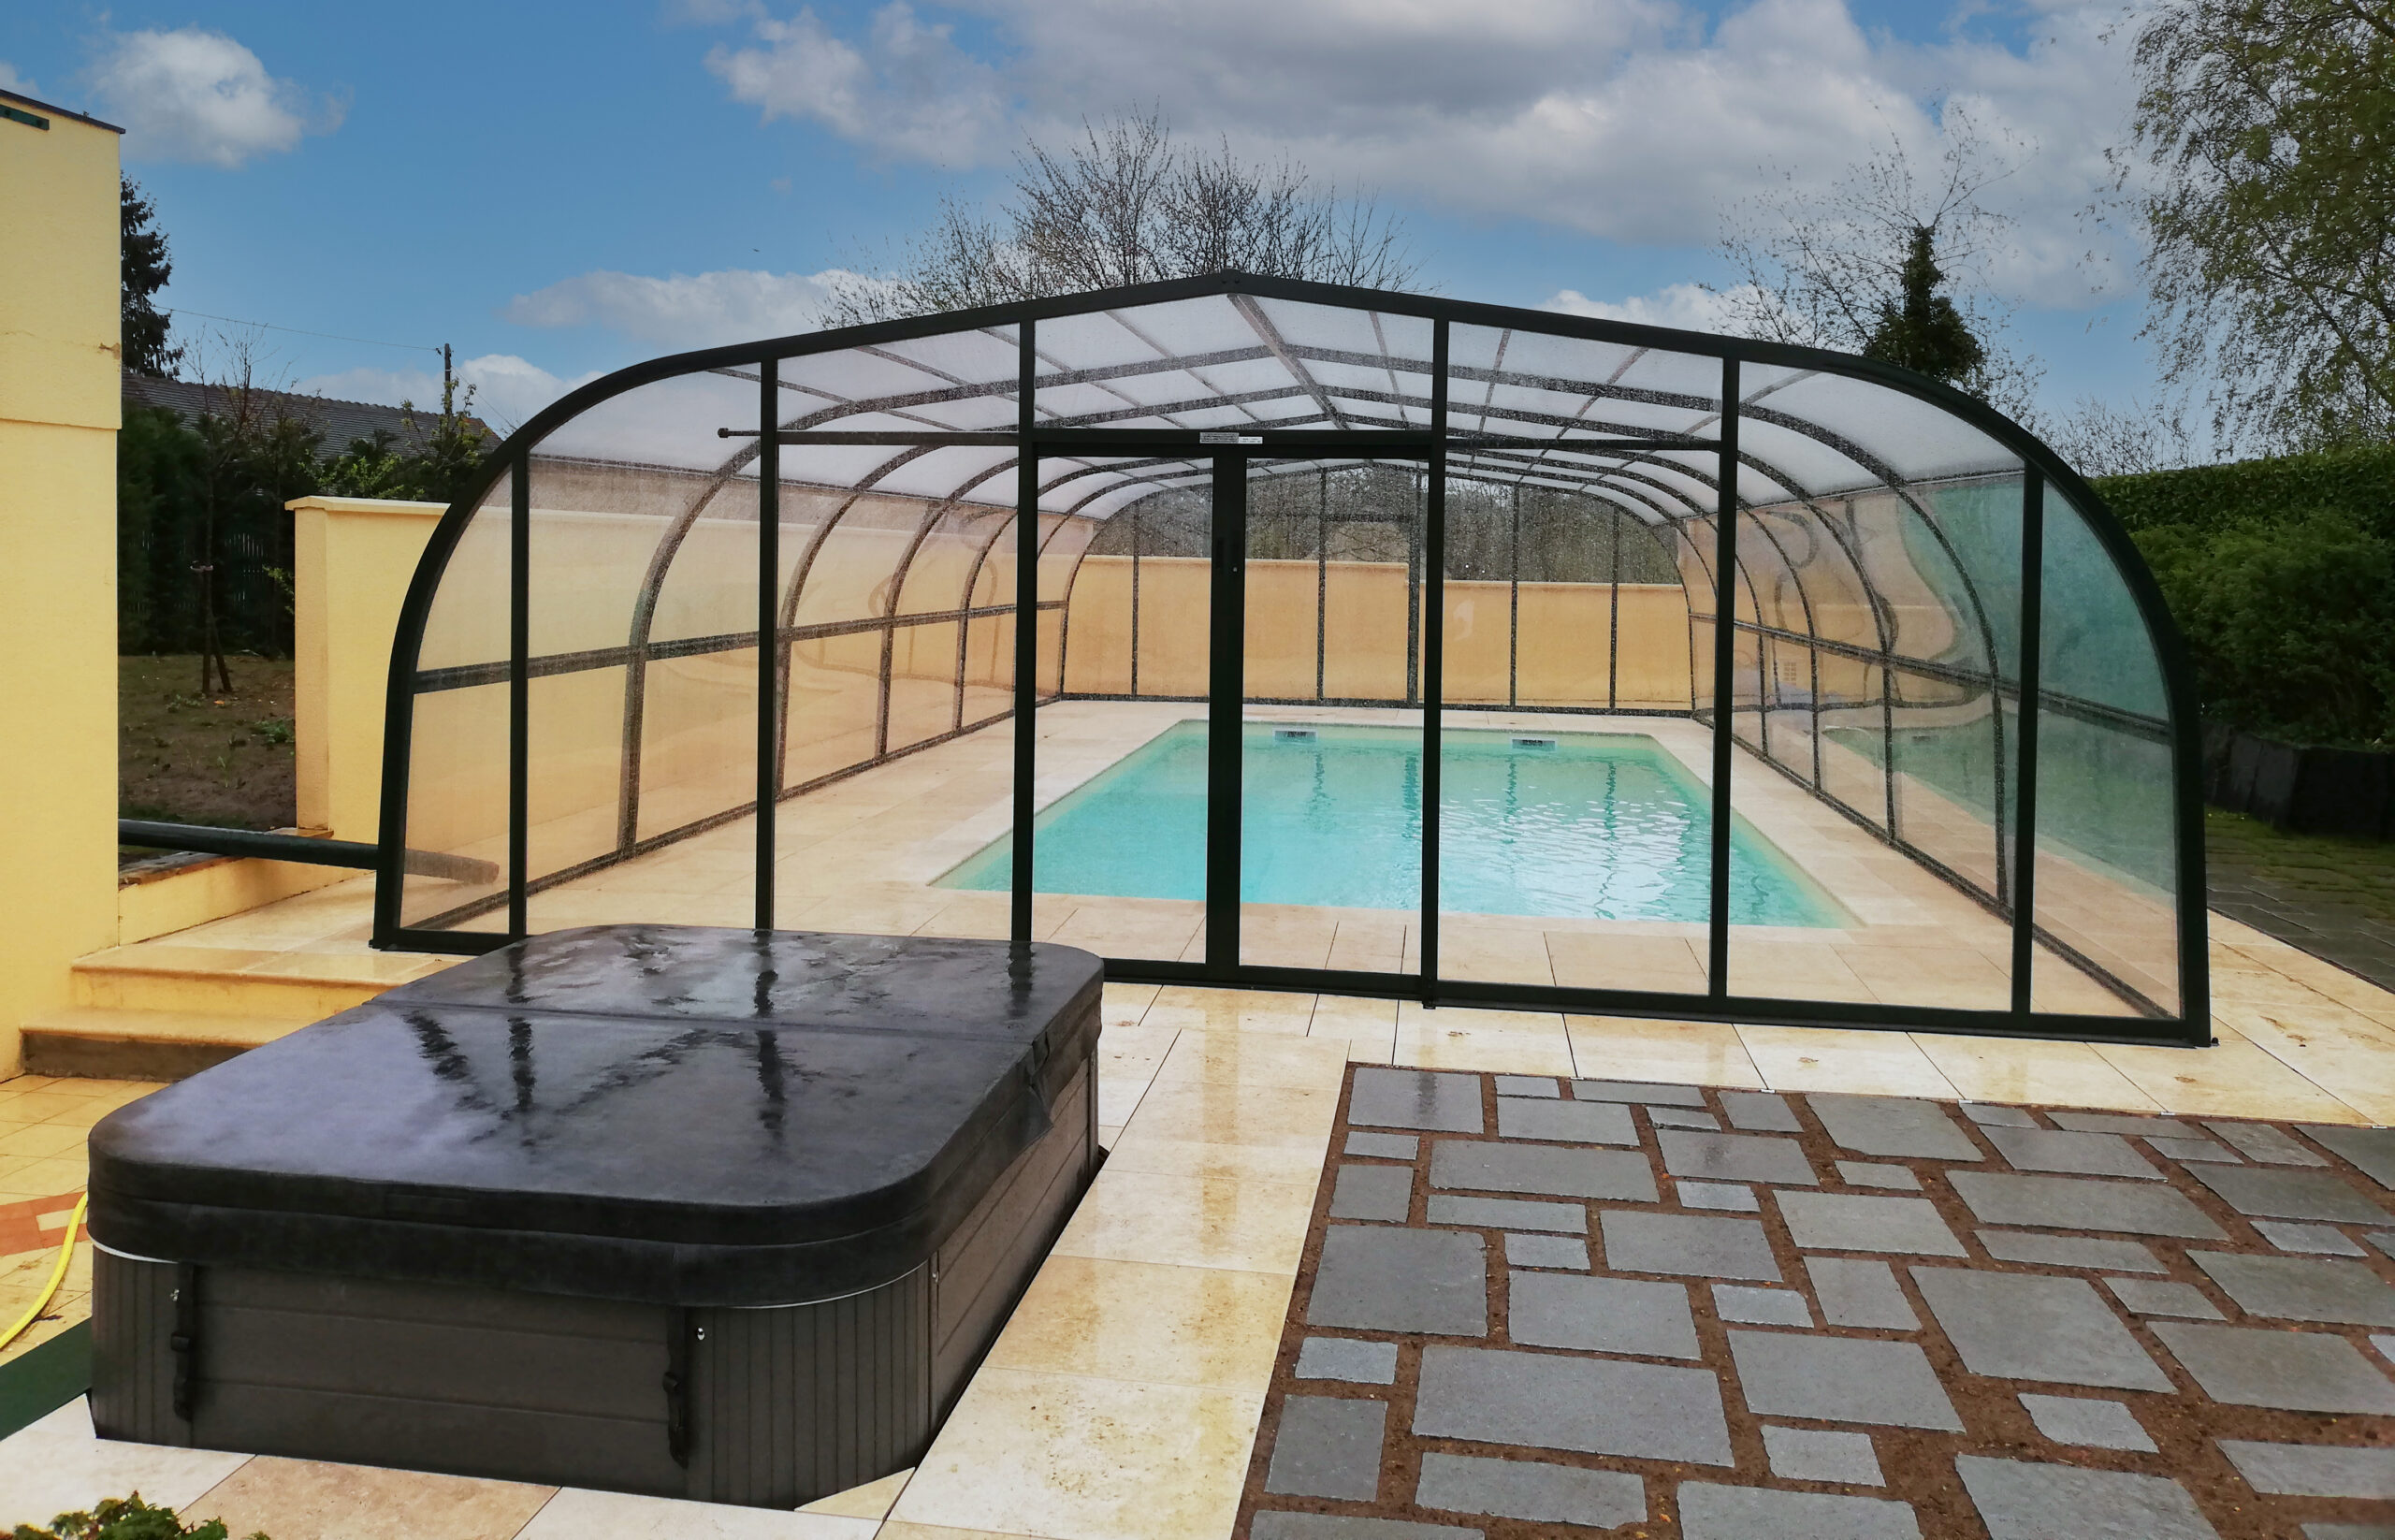 Rénovation totale d'une piscine avec abris haut Carla, terrasse sur plots en grès cérame et installation d'un spa